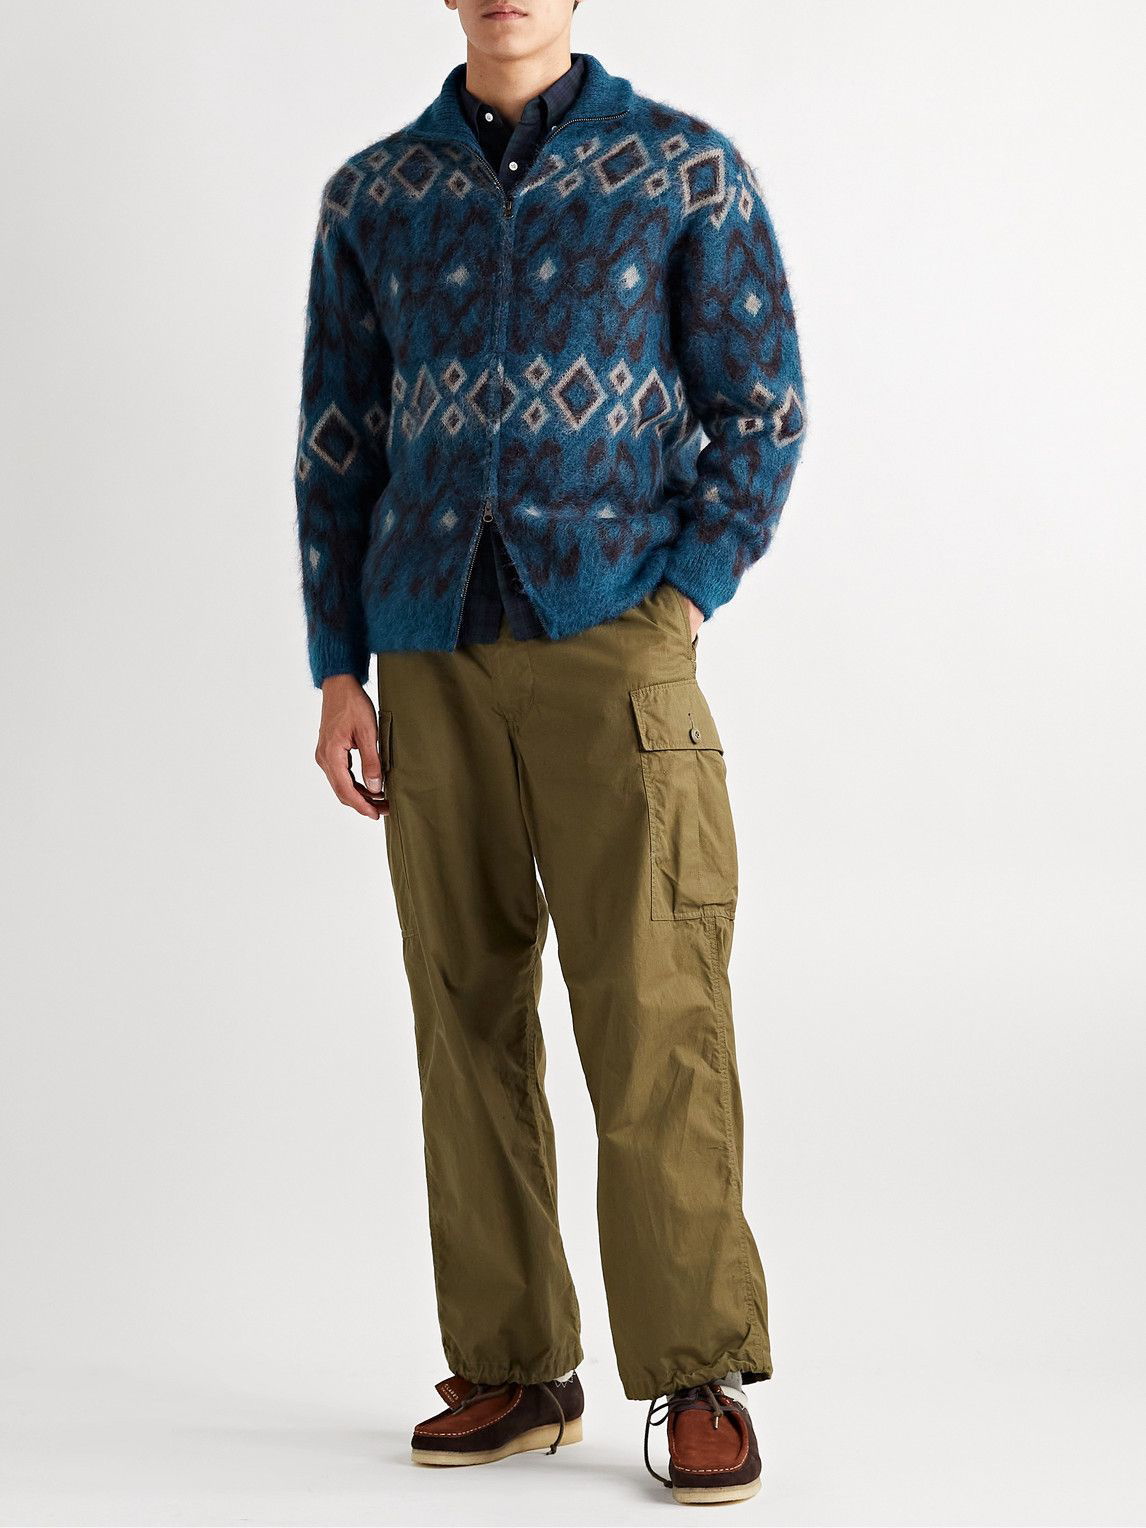 Beams Plus Jacquard Knit Cardigan Khaki(24)